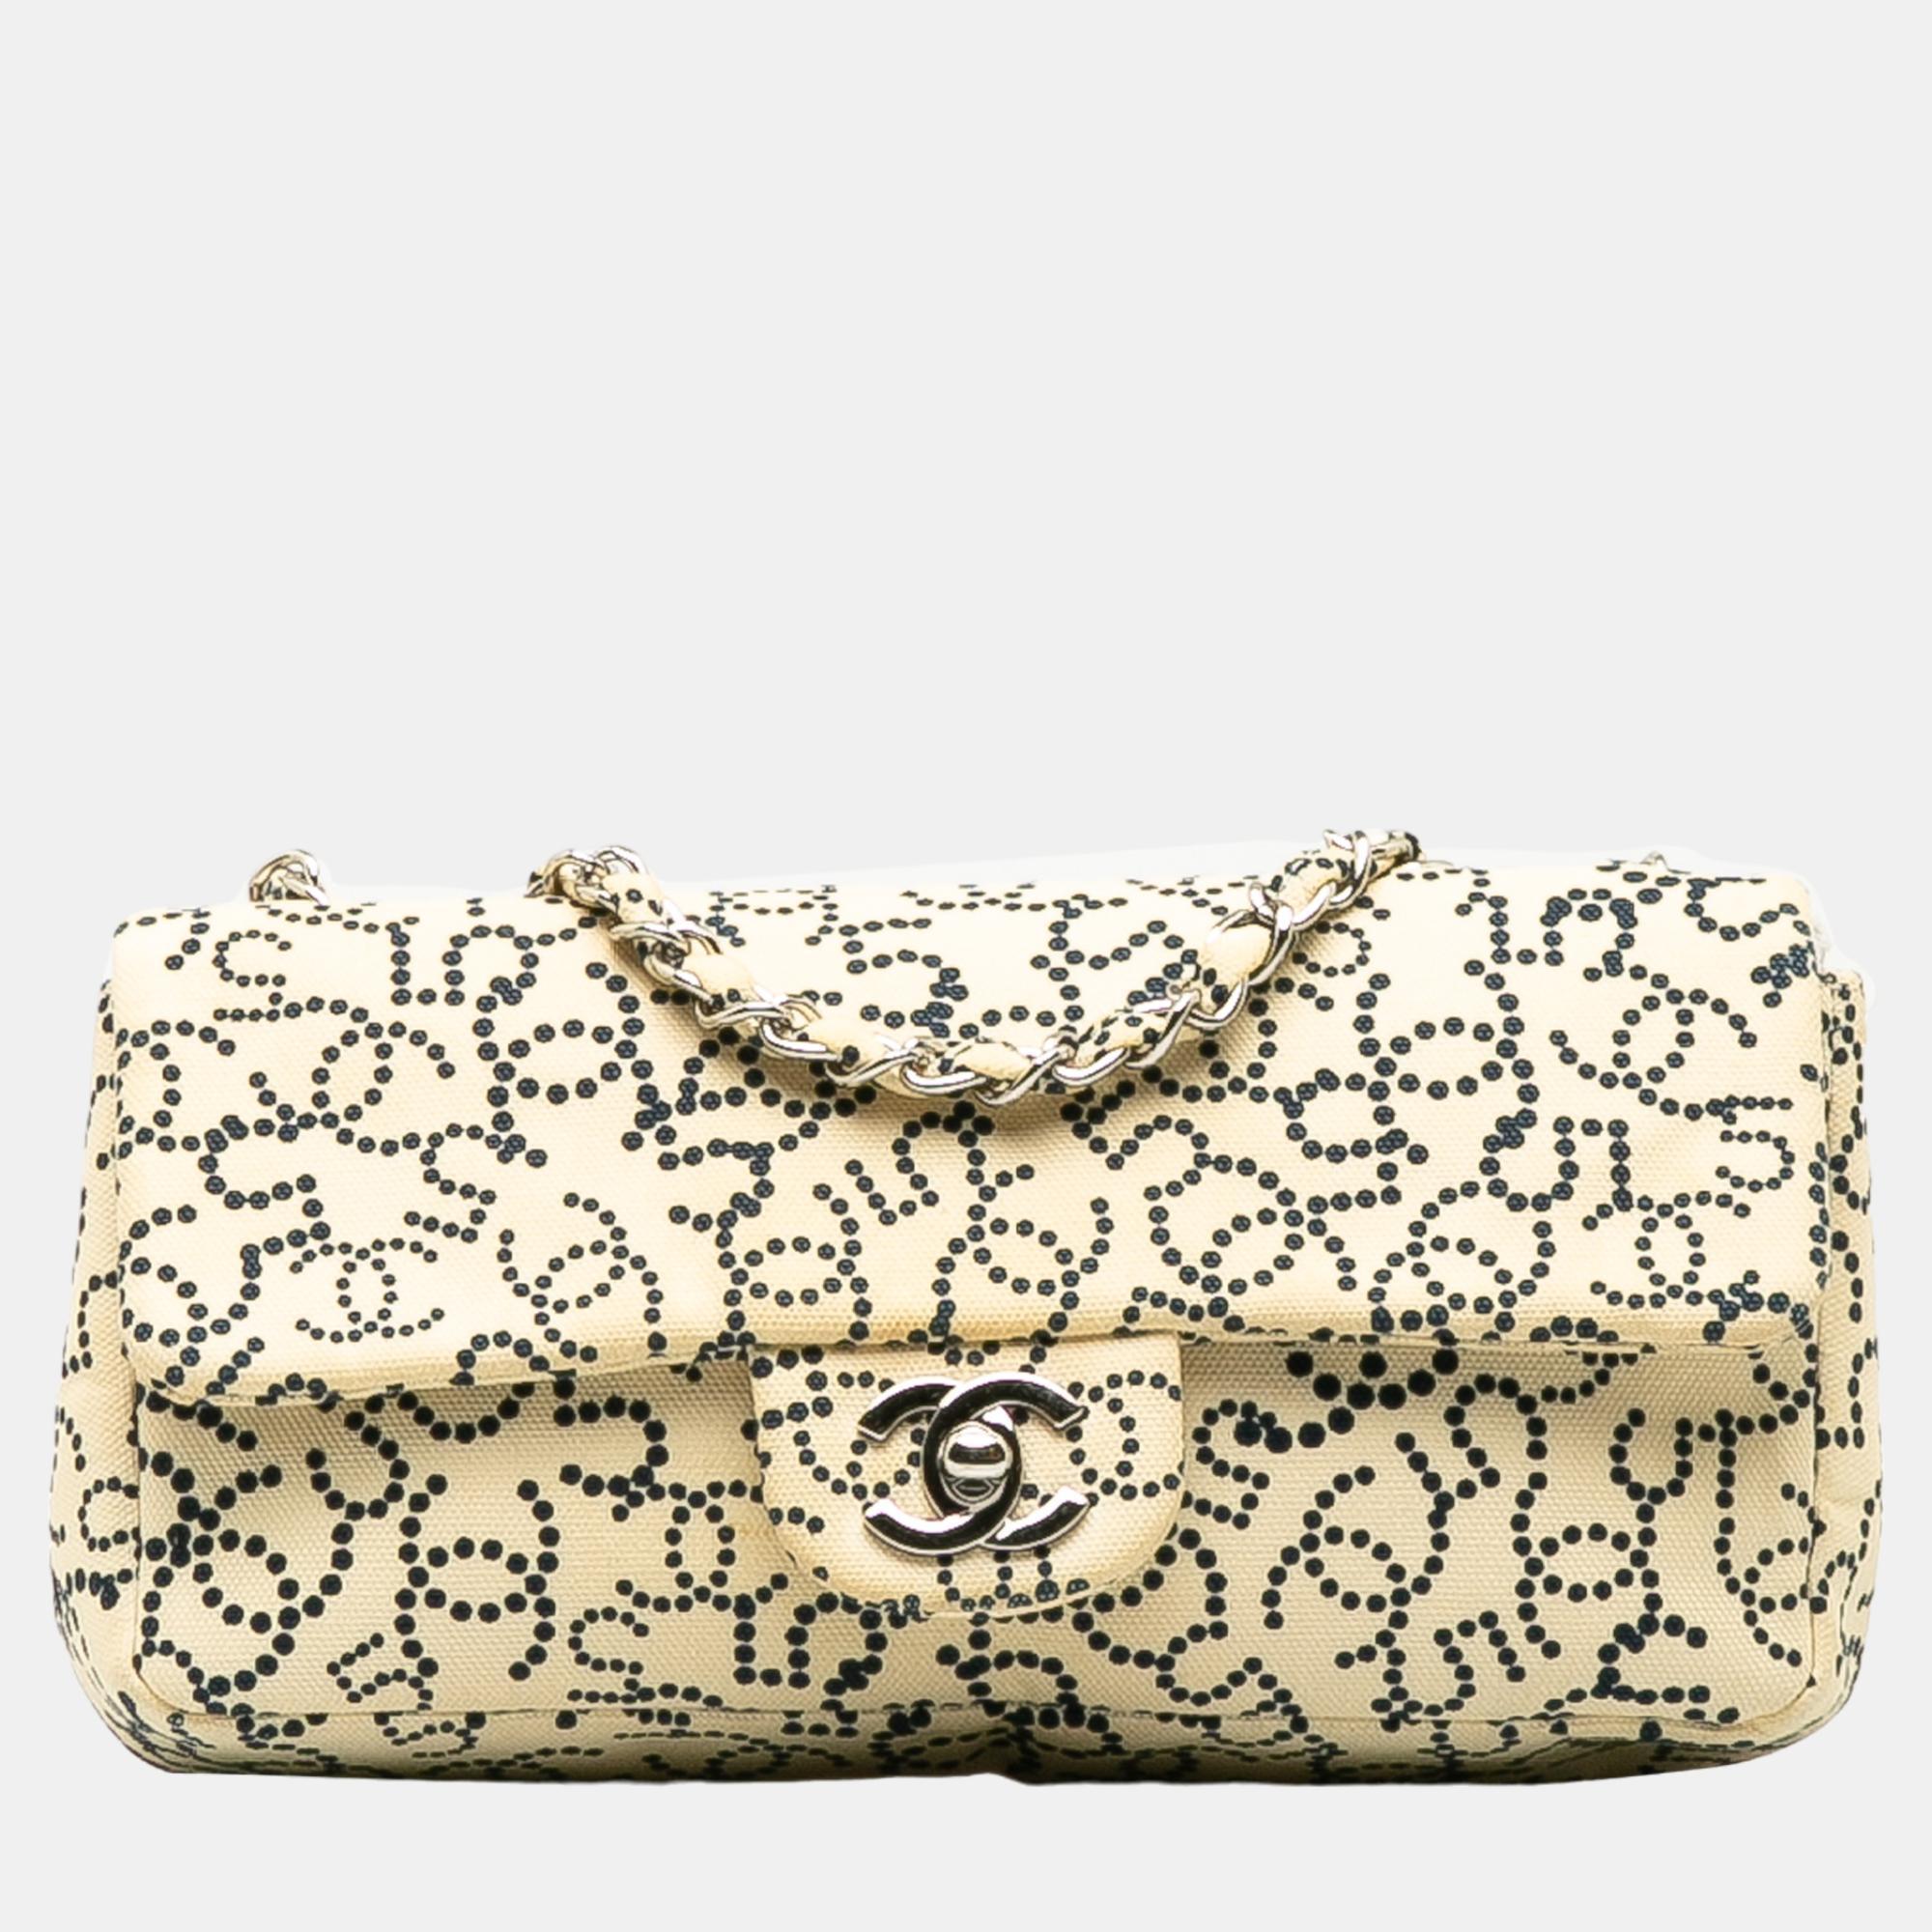 Chanel beige cc no.5 canvas flap bag